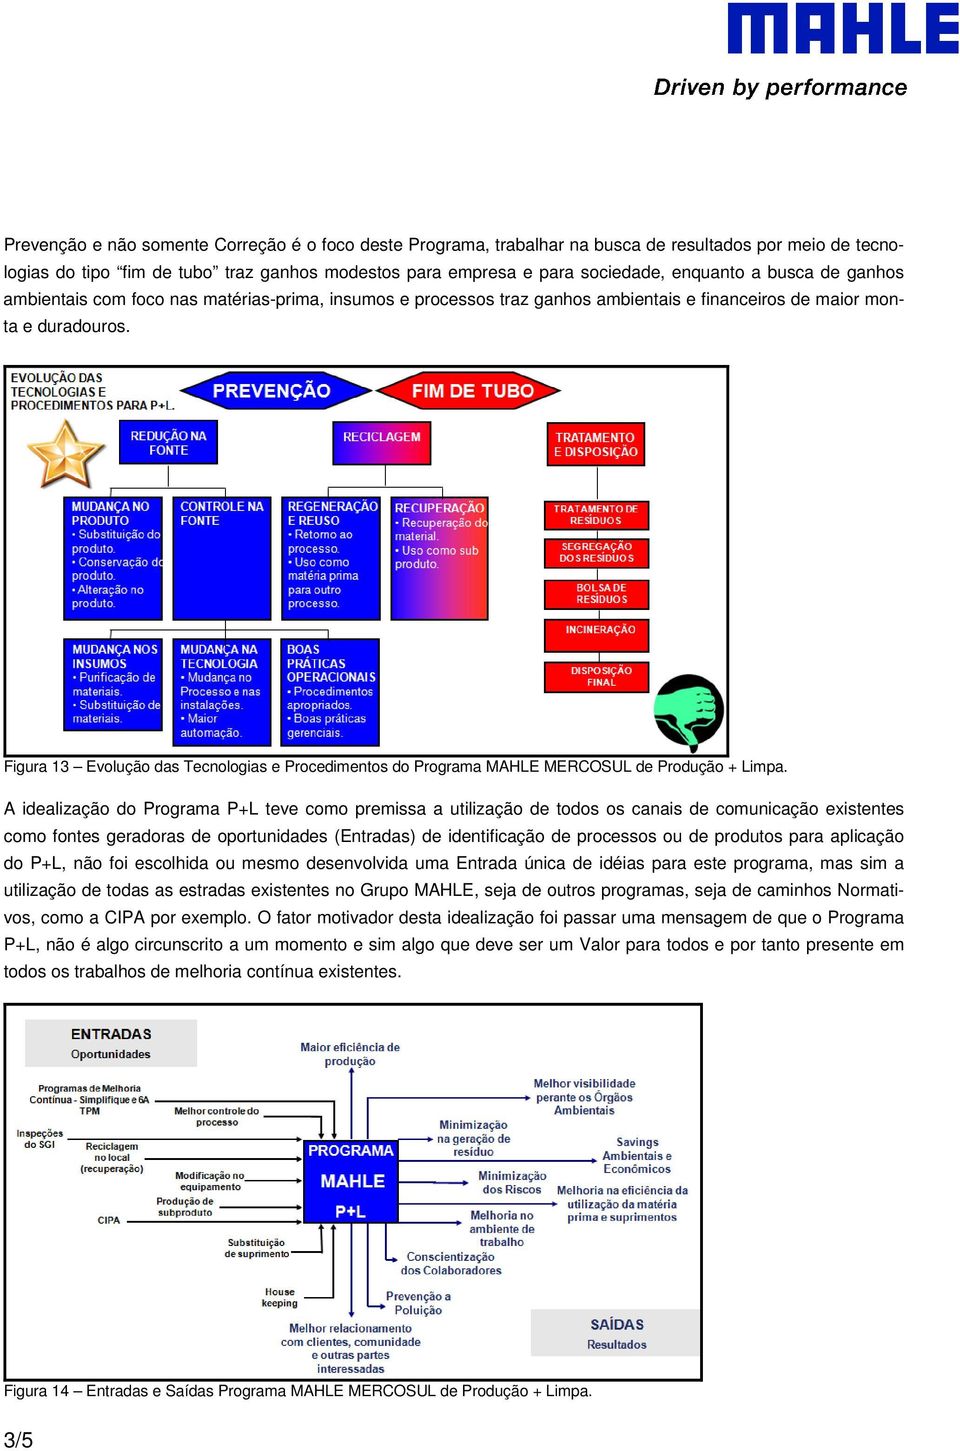 Figura 13 Evolução das Tecnologias e Procedimentos do Programa MAHLE MERCOSUL de Produção + Limpa.